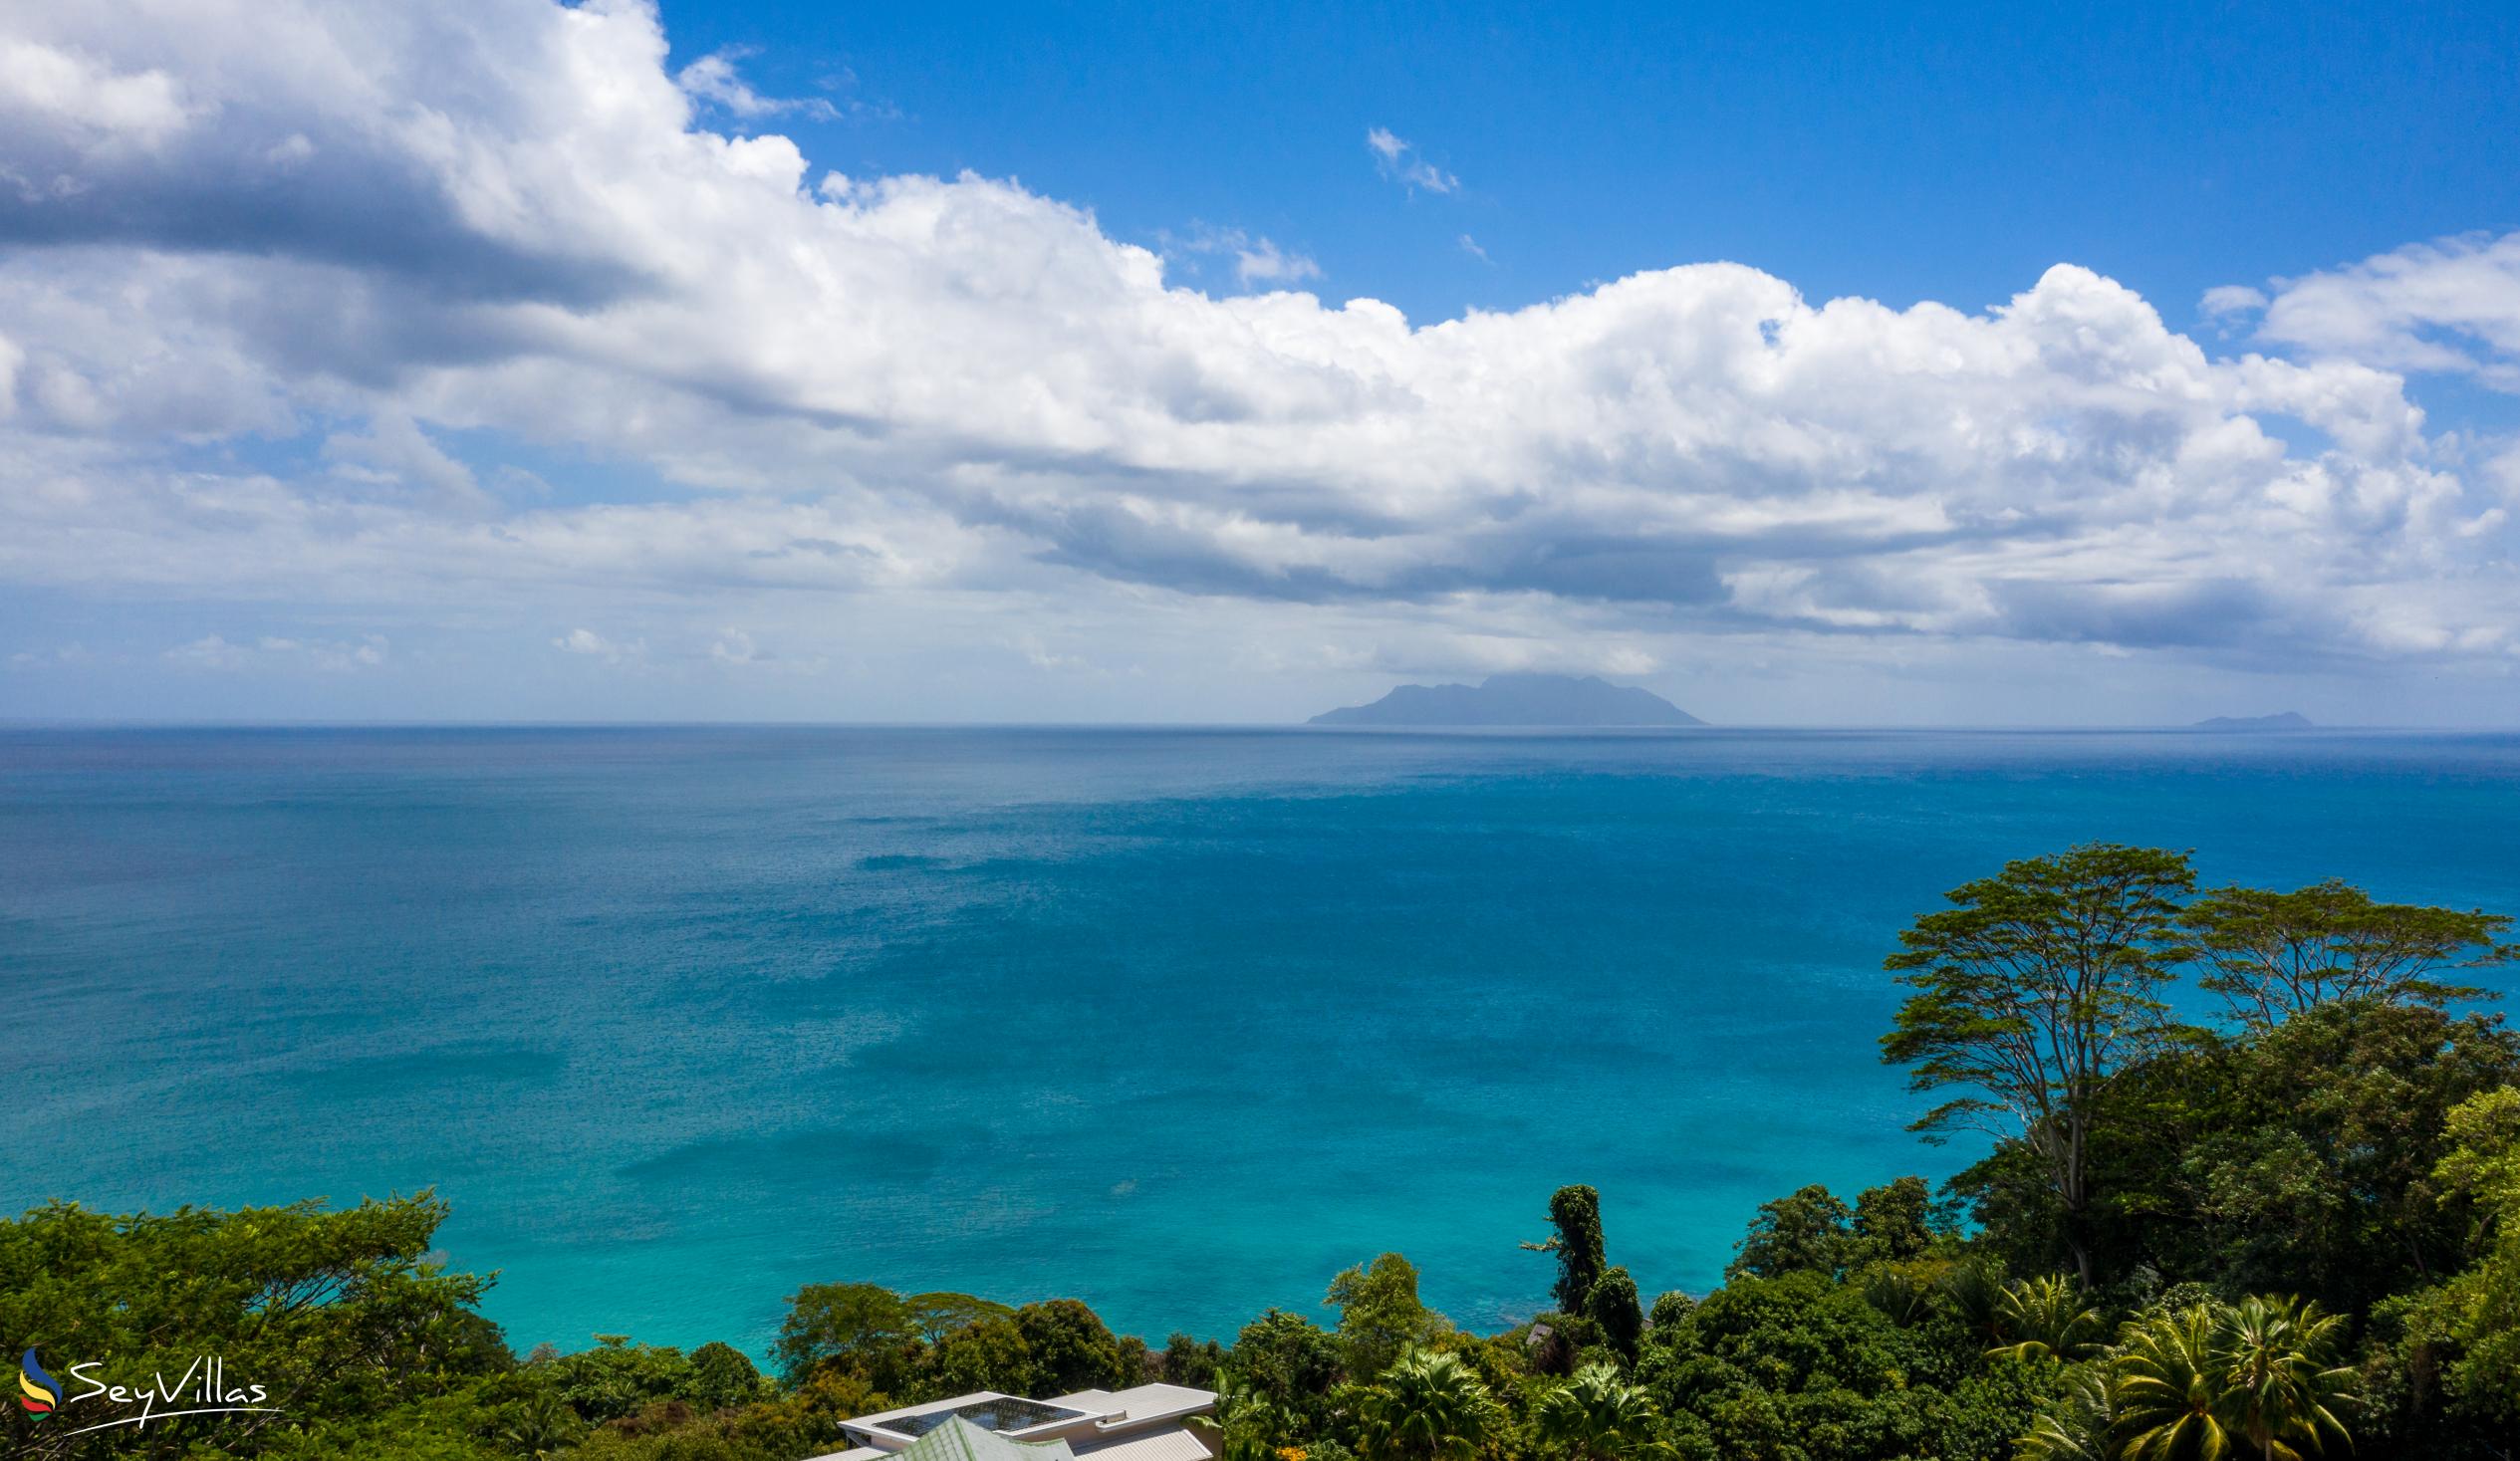 Foto 19: Reve Bleu - Lage - Mahé (Seychellen)